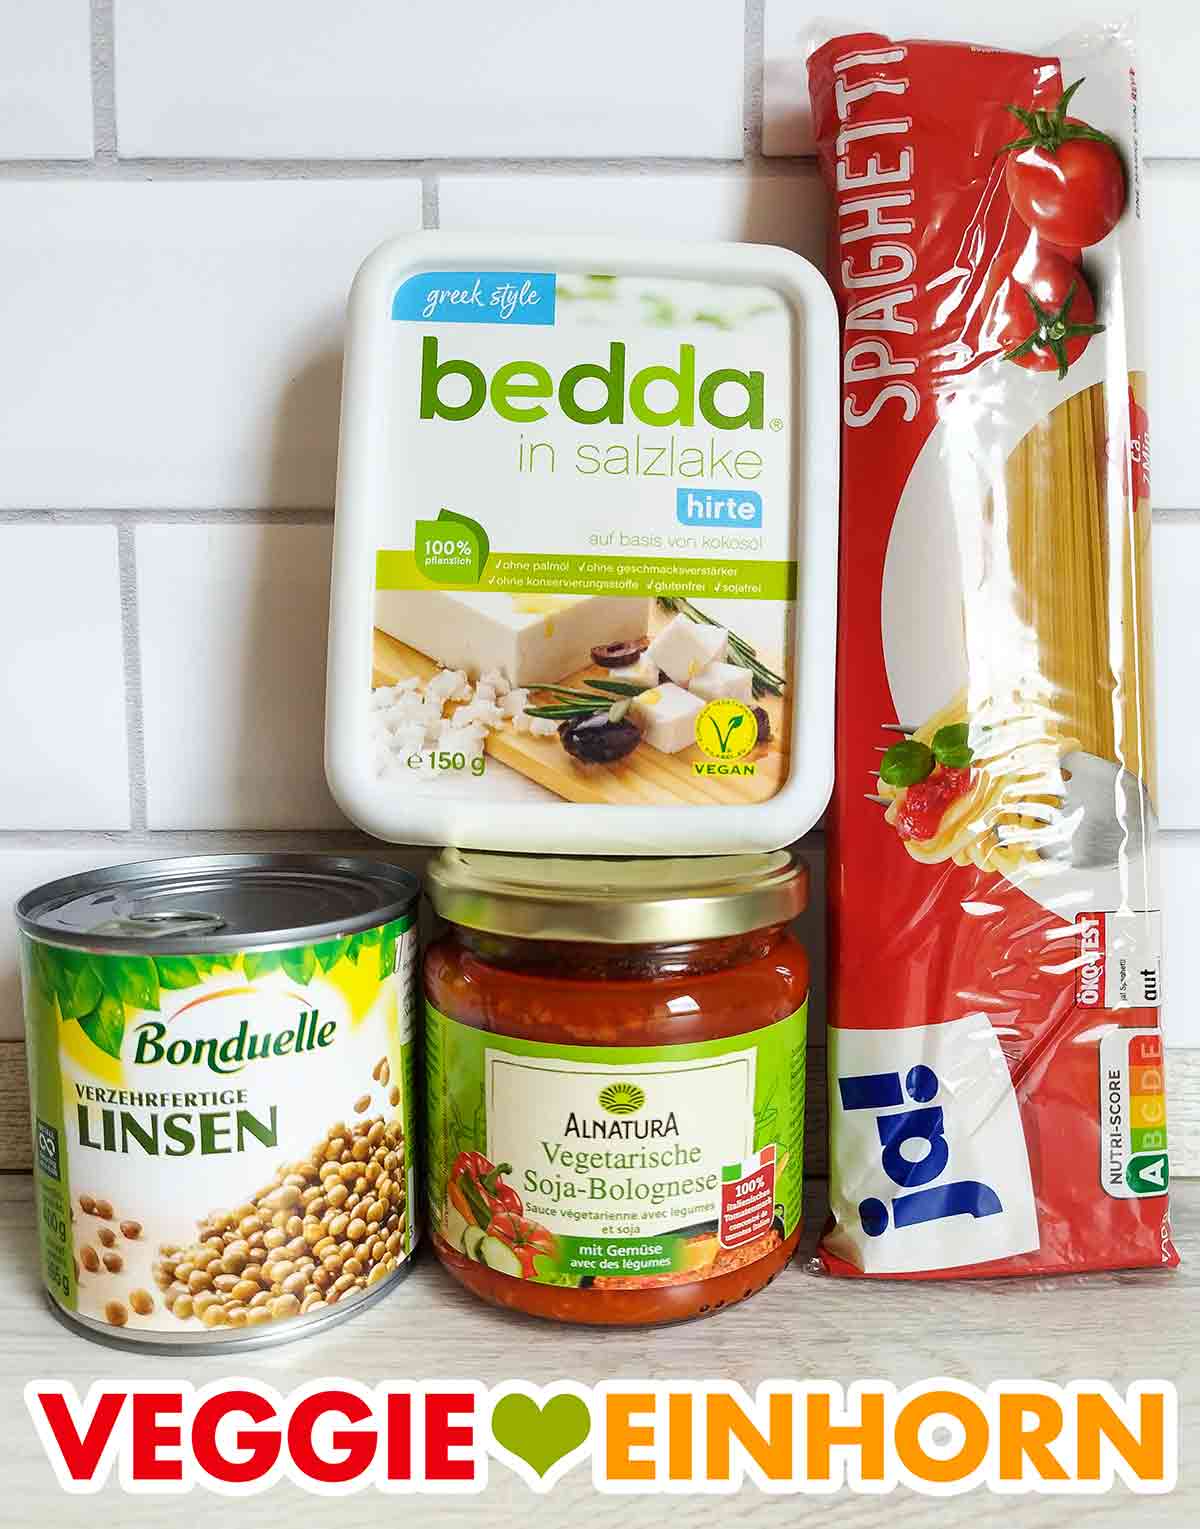 Veganer Feta, eine Dose Linsen, ein Glas vegane Soja Bolognese, eine Packung Spaghetti